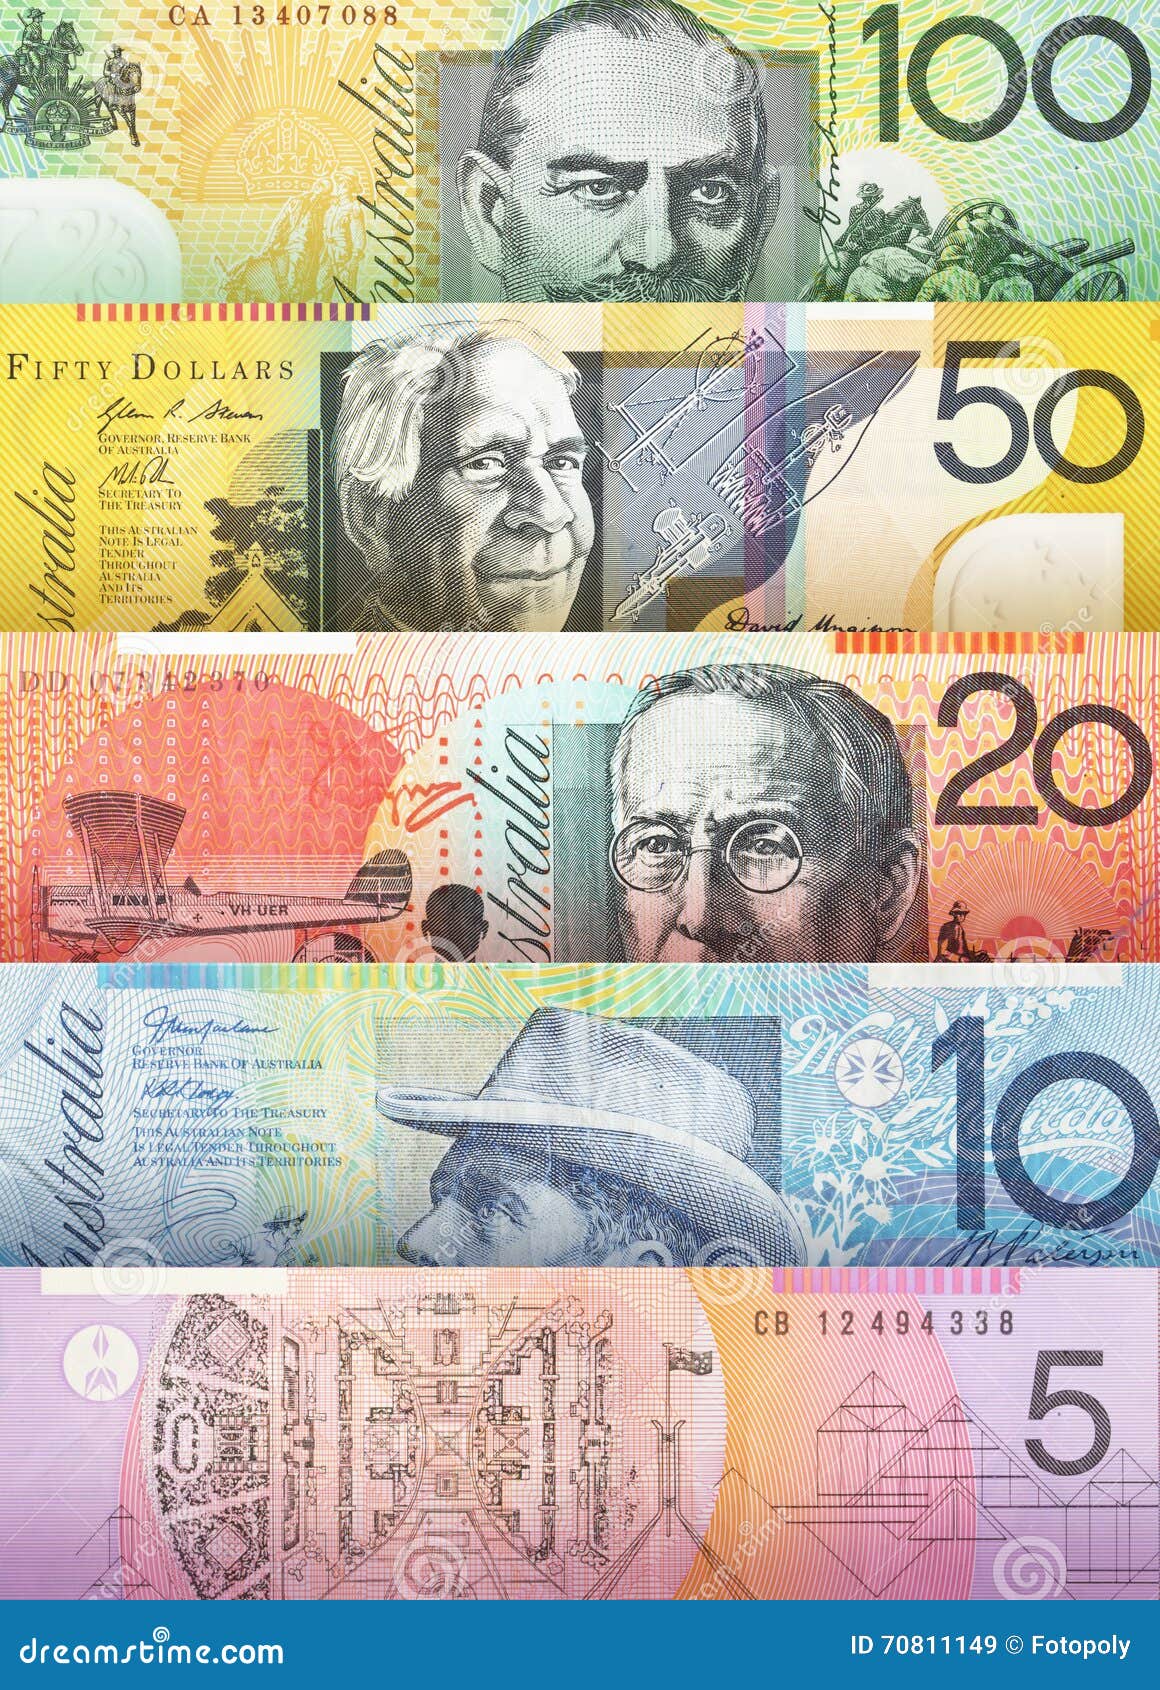 澳大利亚元钞票传播 库存照片. 图片 包括有 现金, 货币, 特写镜头, 外出, 资金, 澳洲, 卷曲, 扇动 - 46317812